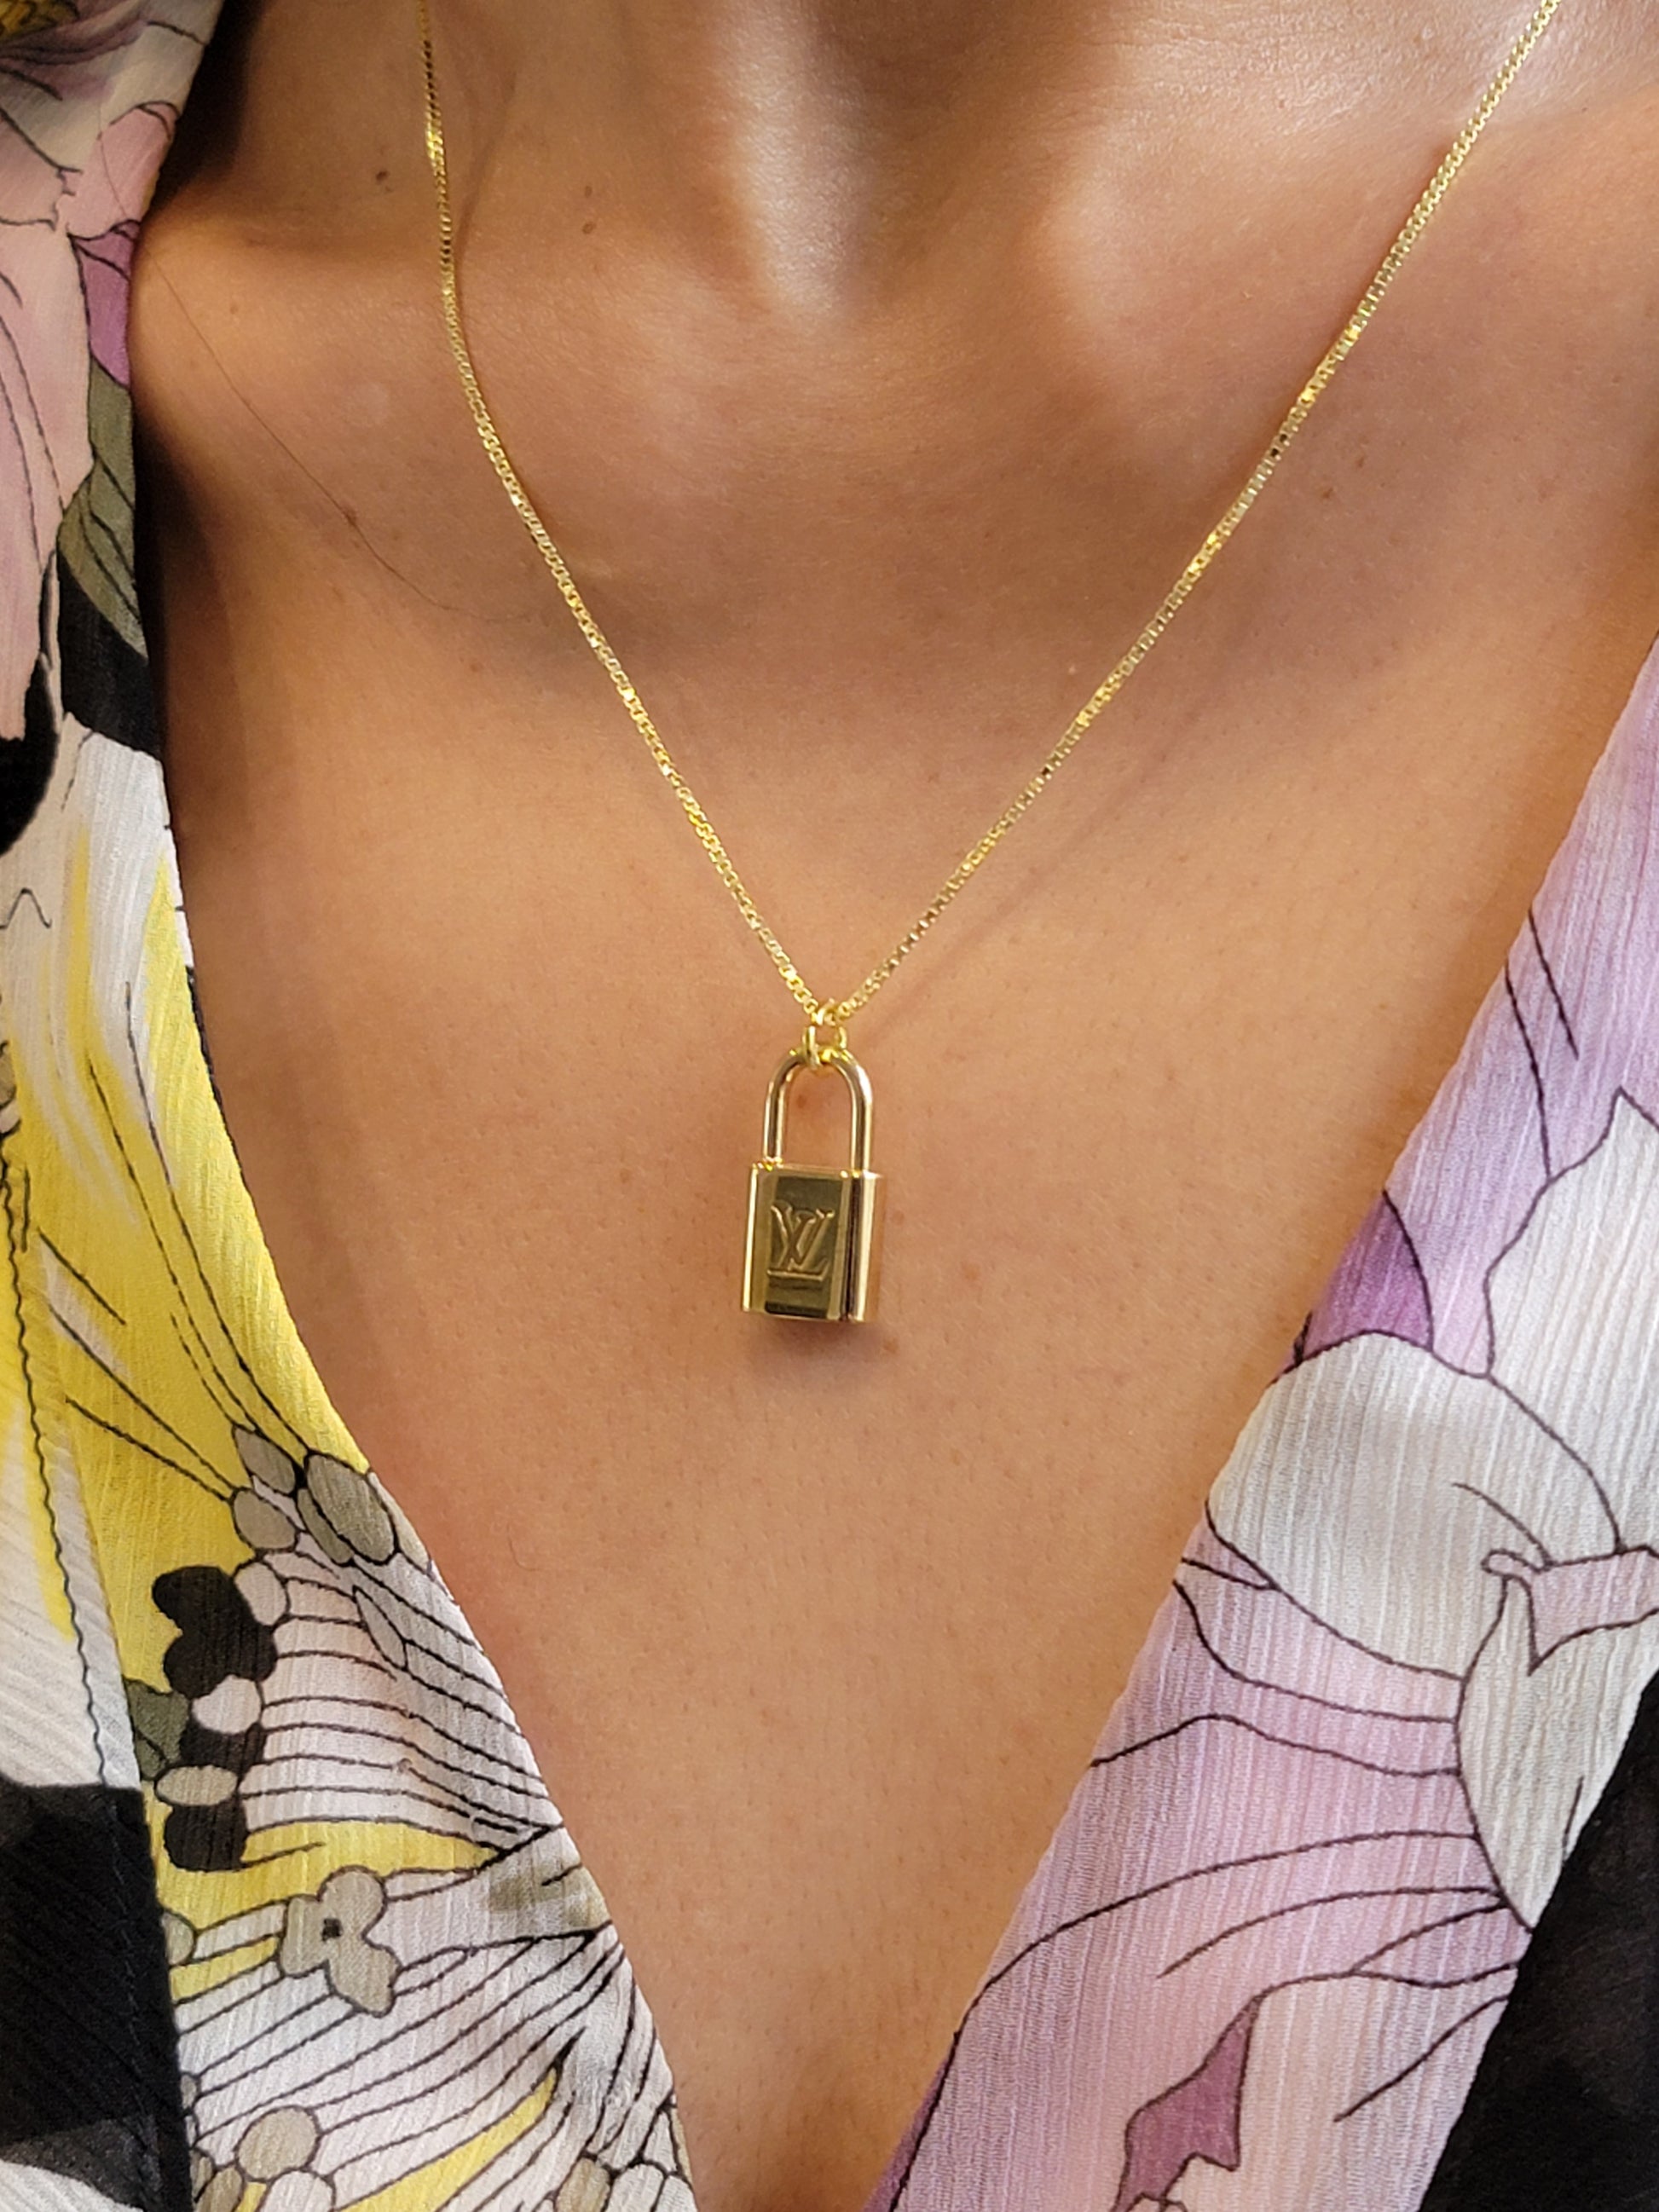 Louis Vuitton Lock Necklace 